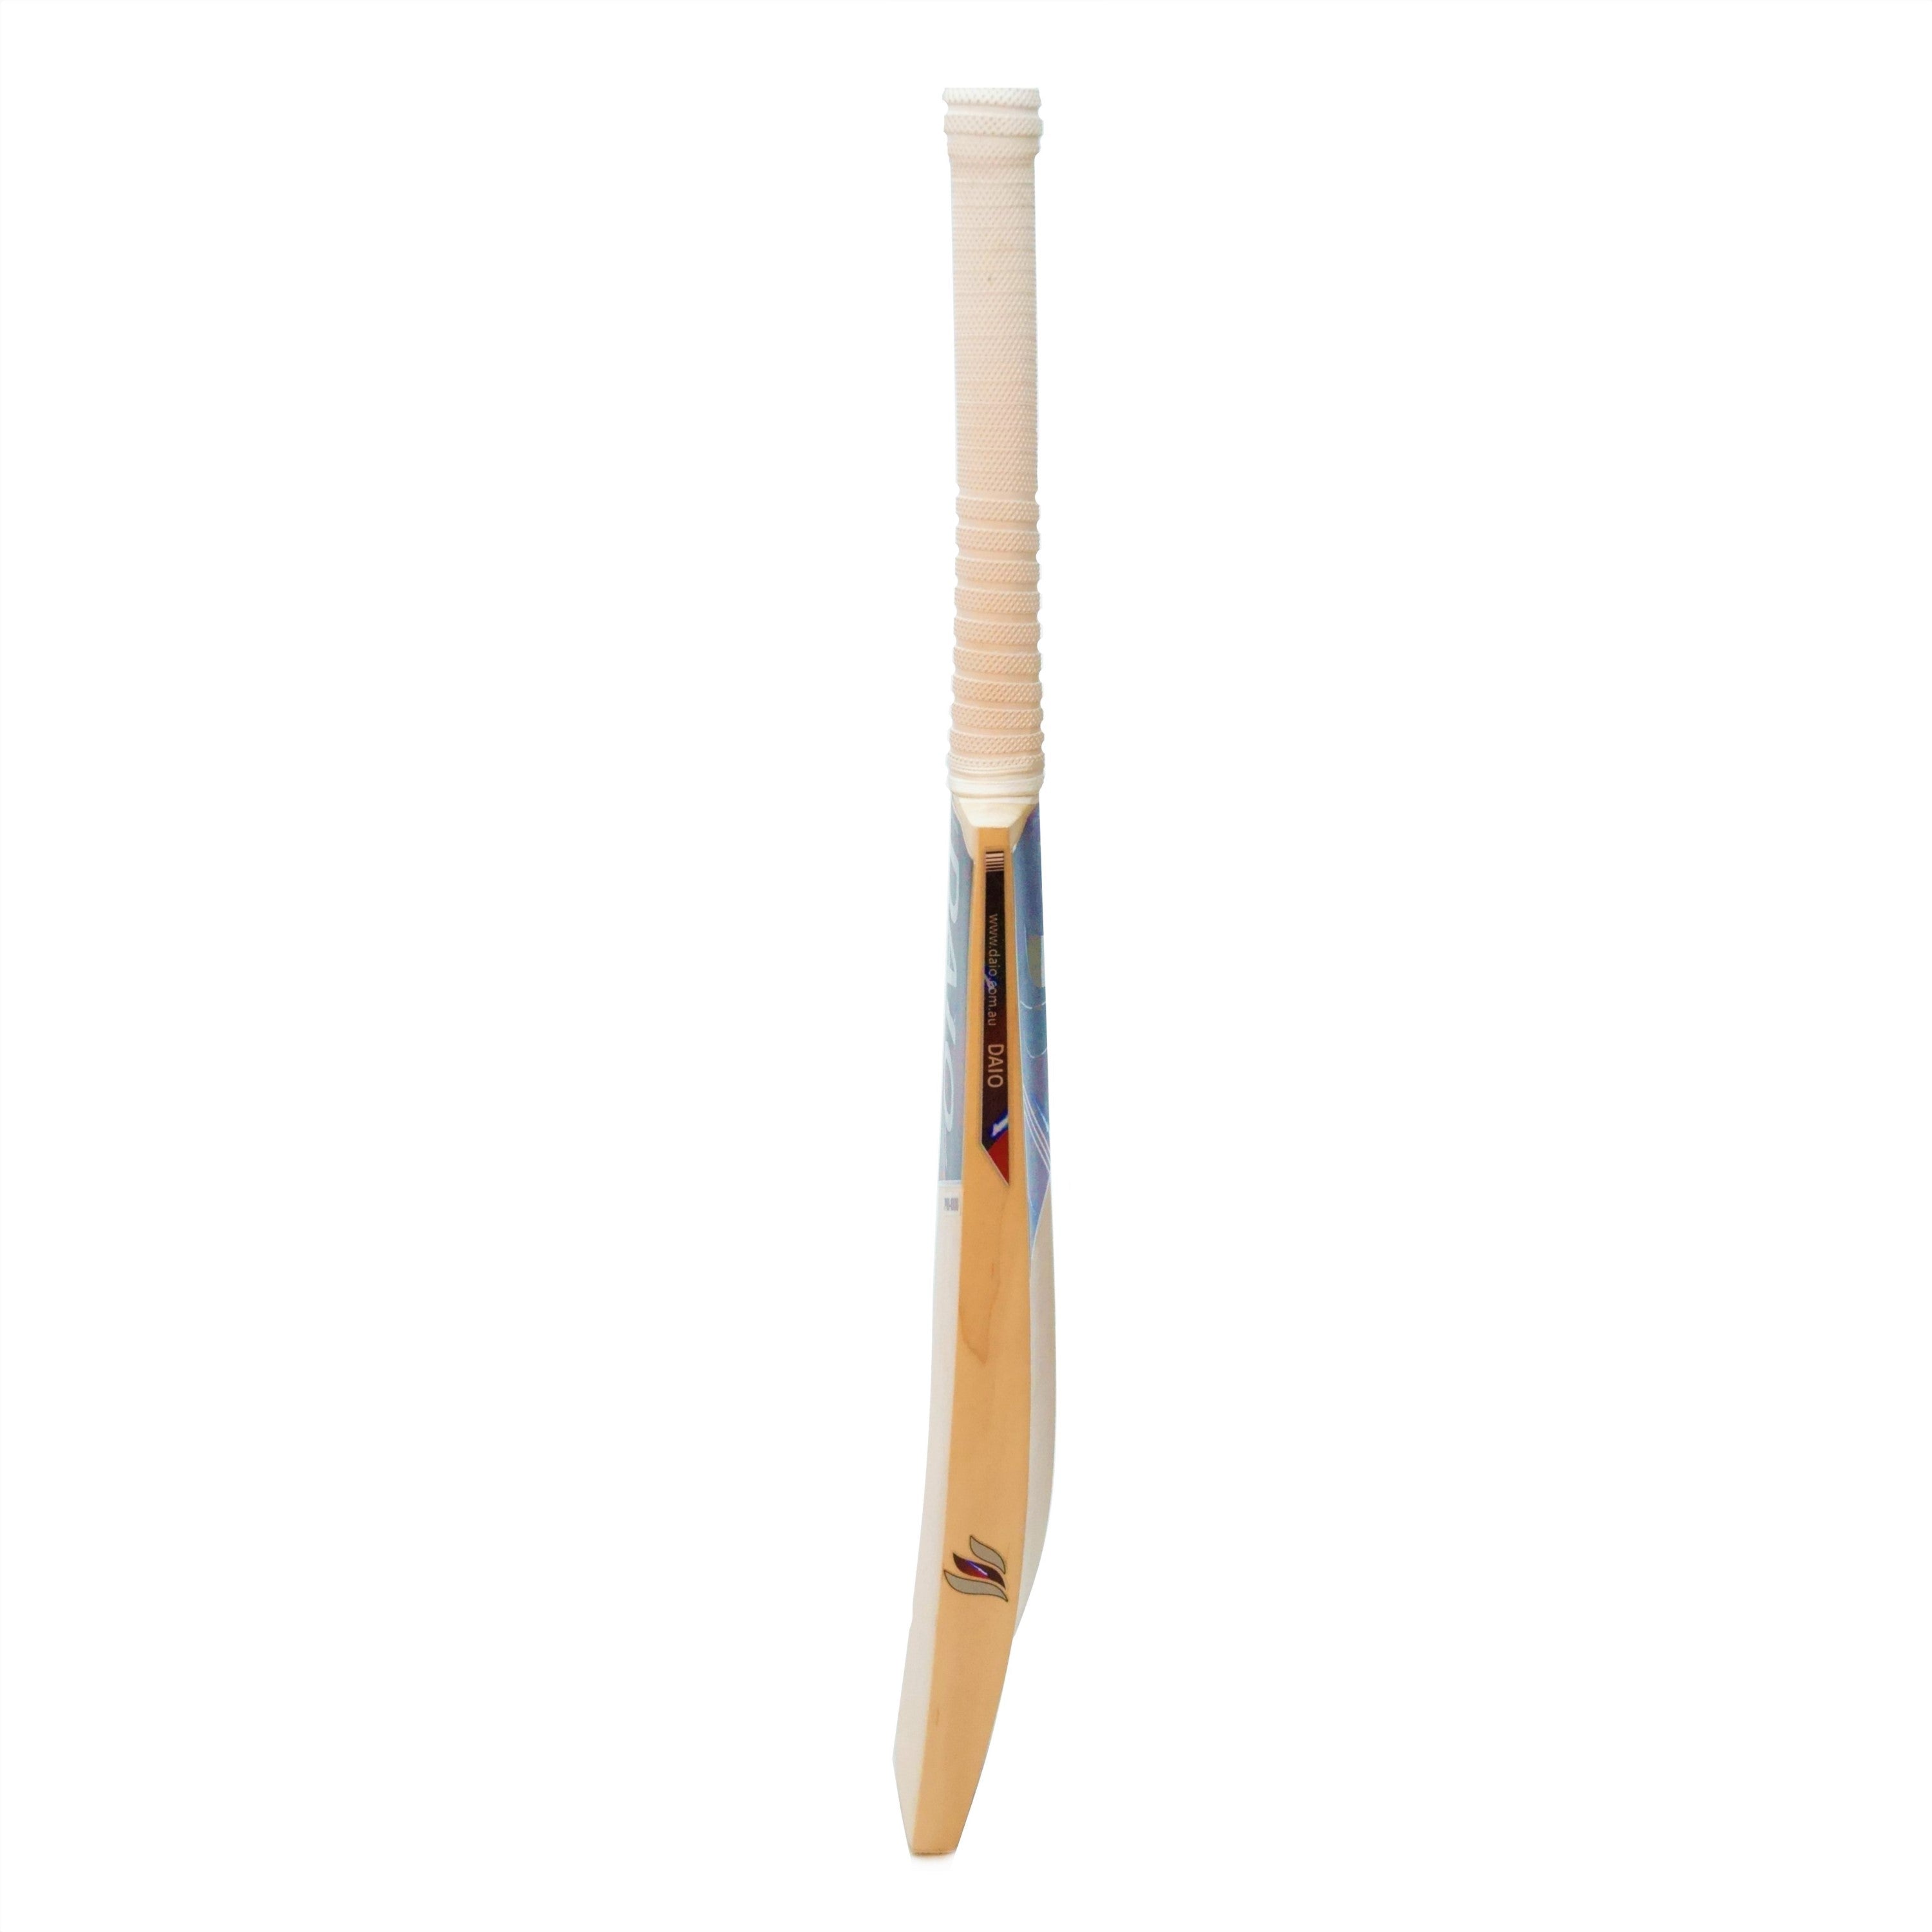 Daio Max-500 English willow cricket bat